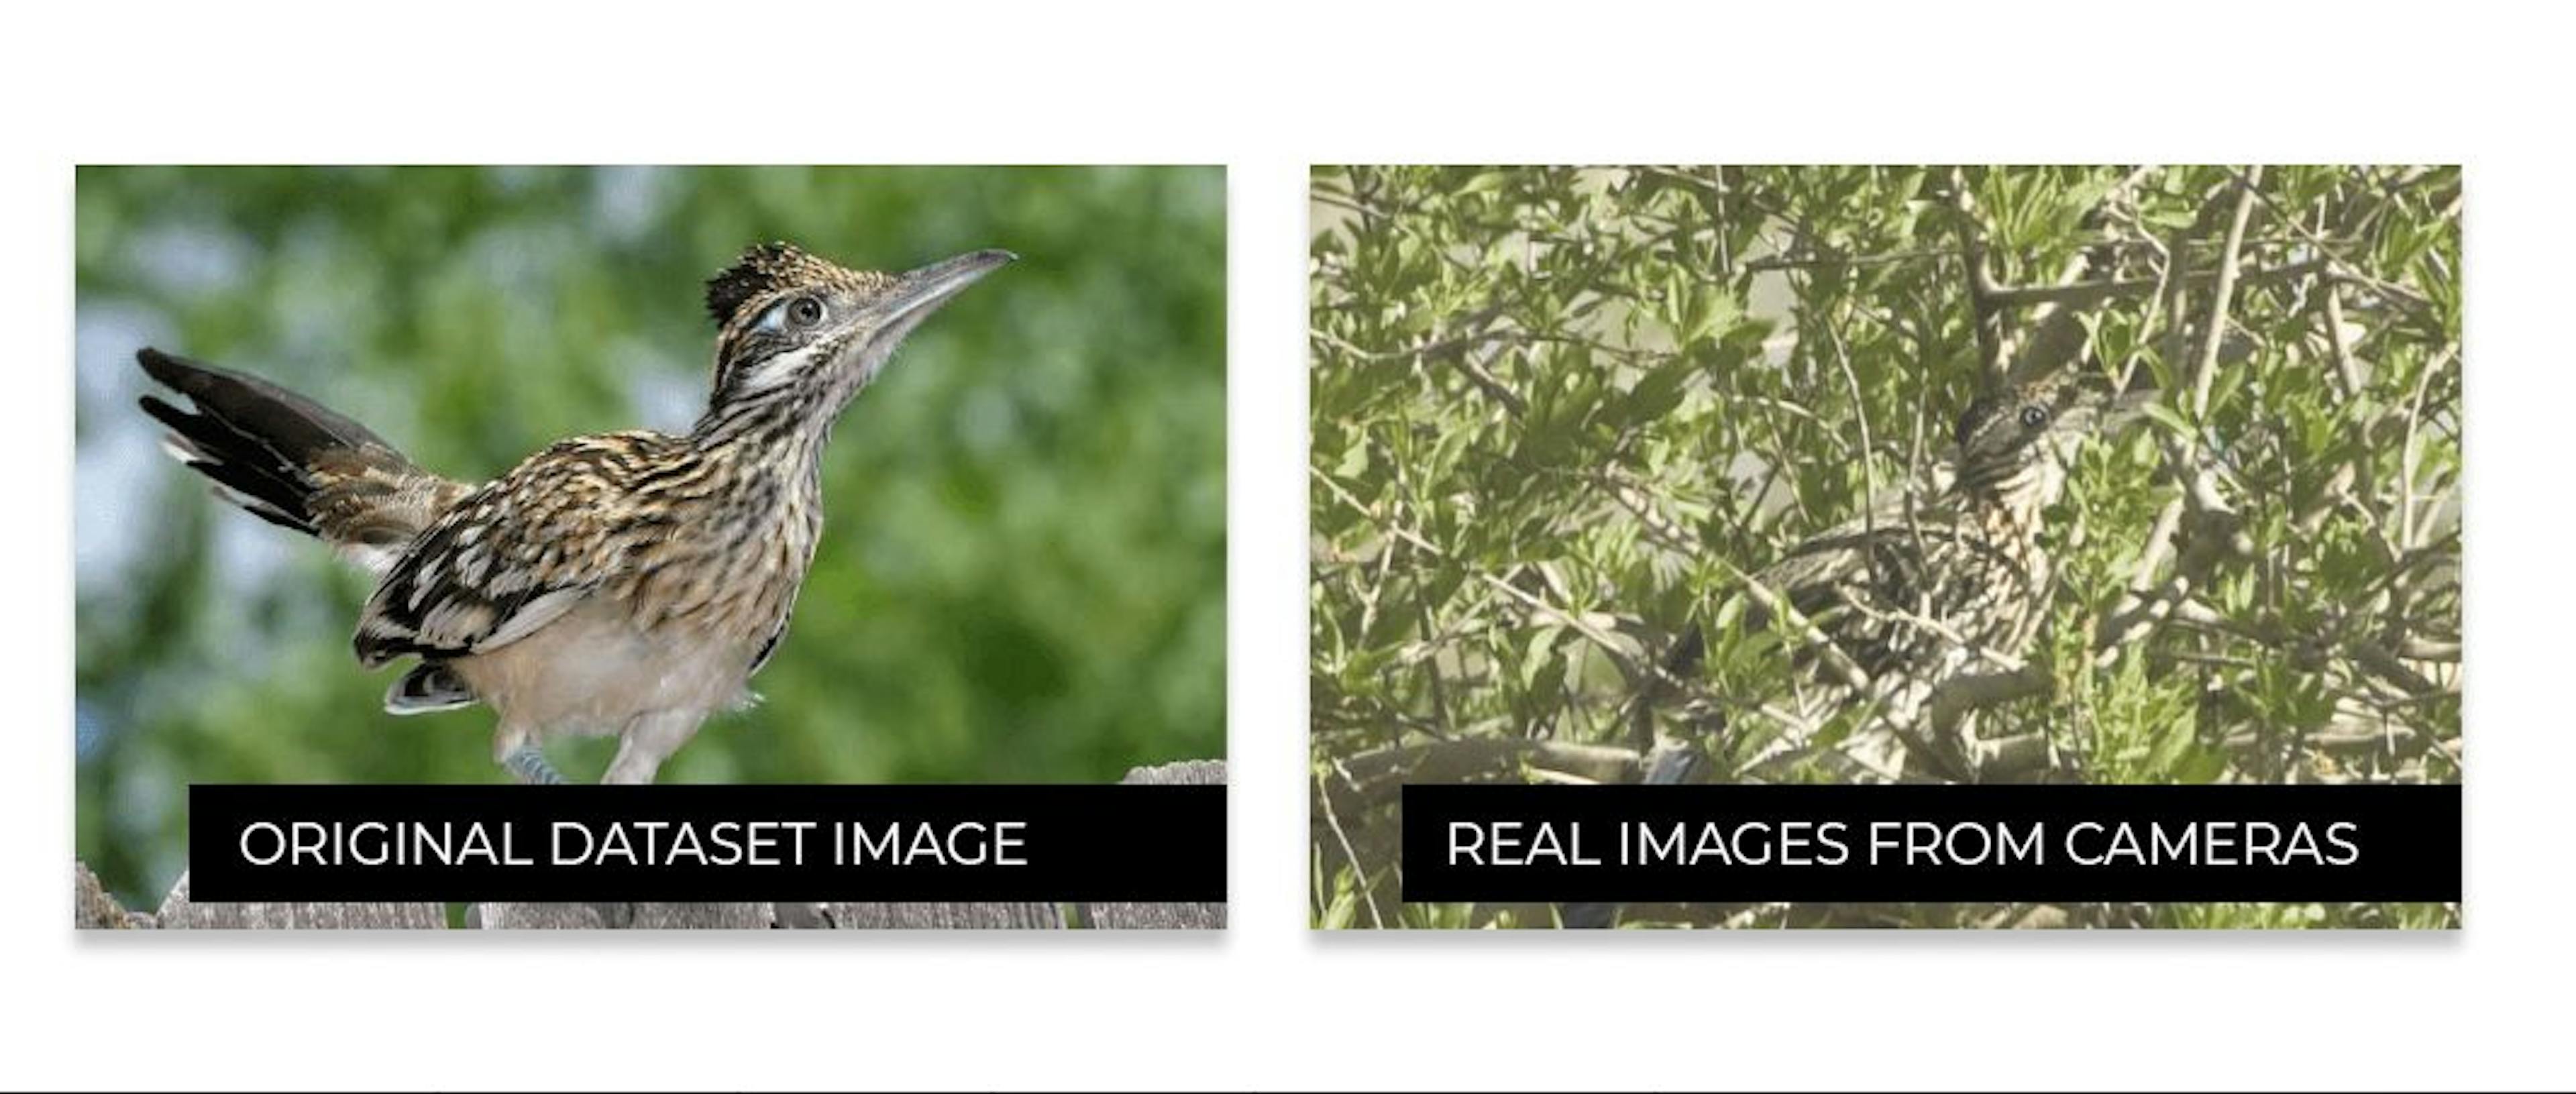 Sự khác biệt giữa hình dáng của loài chim trên Internet và hình dáng của chúng trong môi trường thực tế